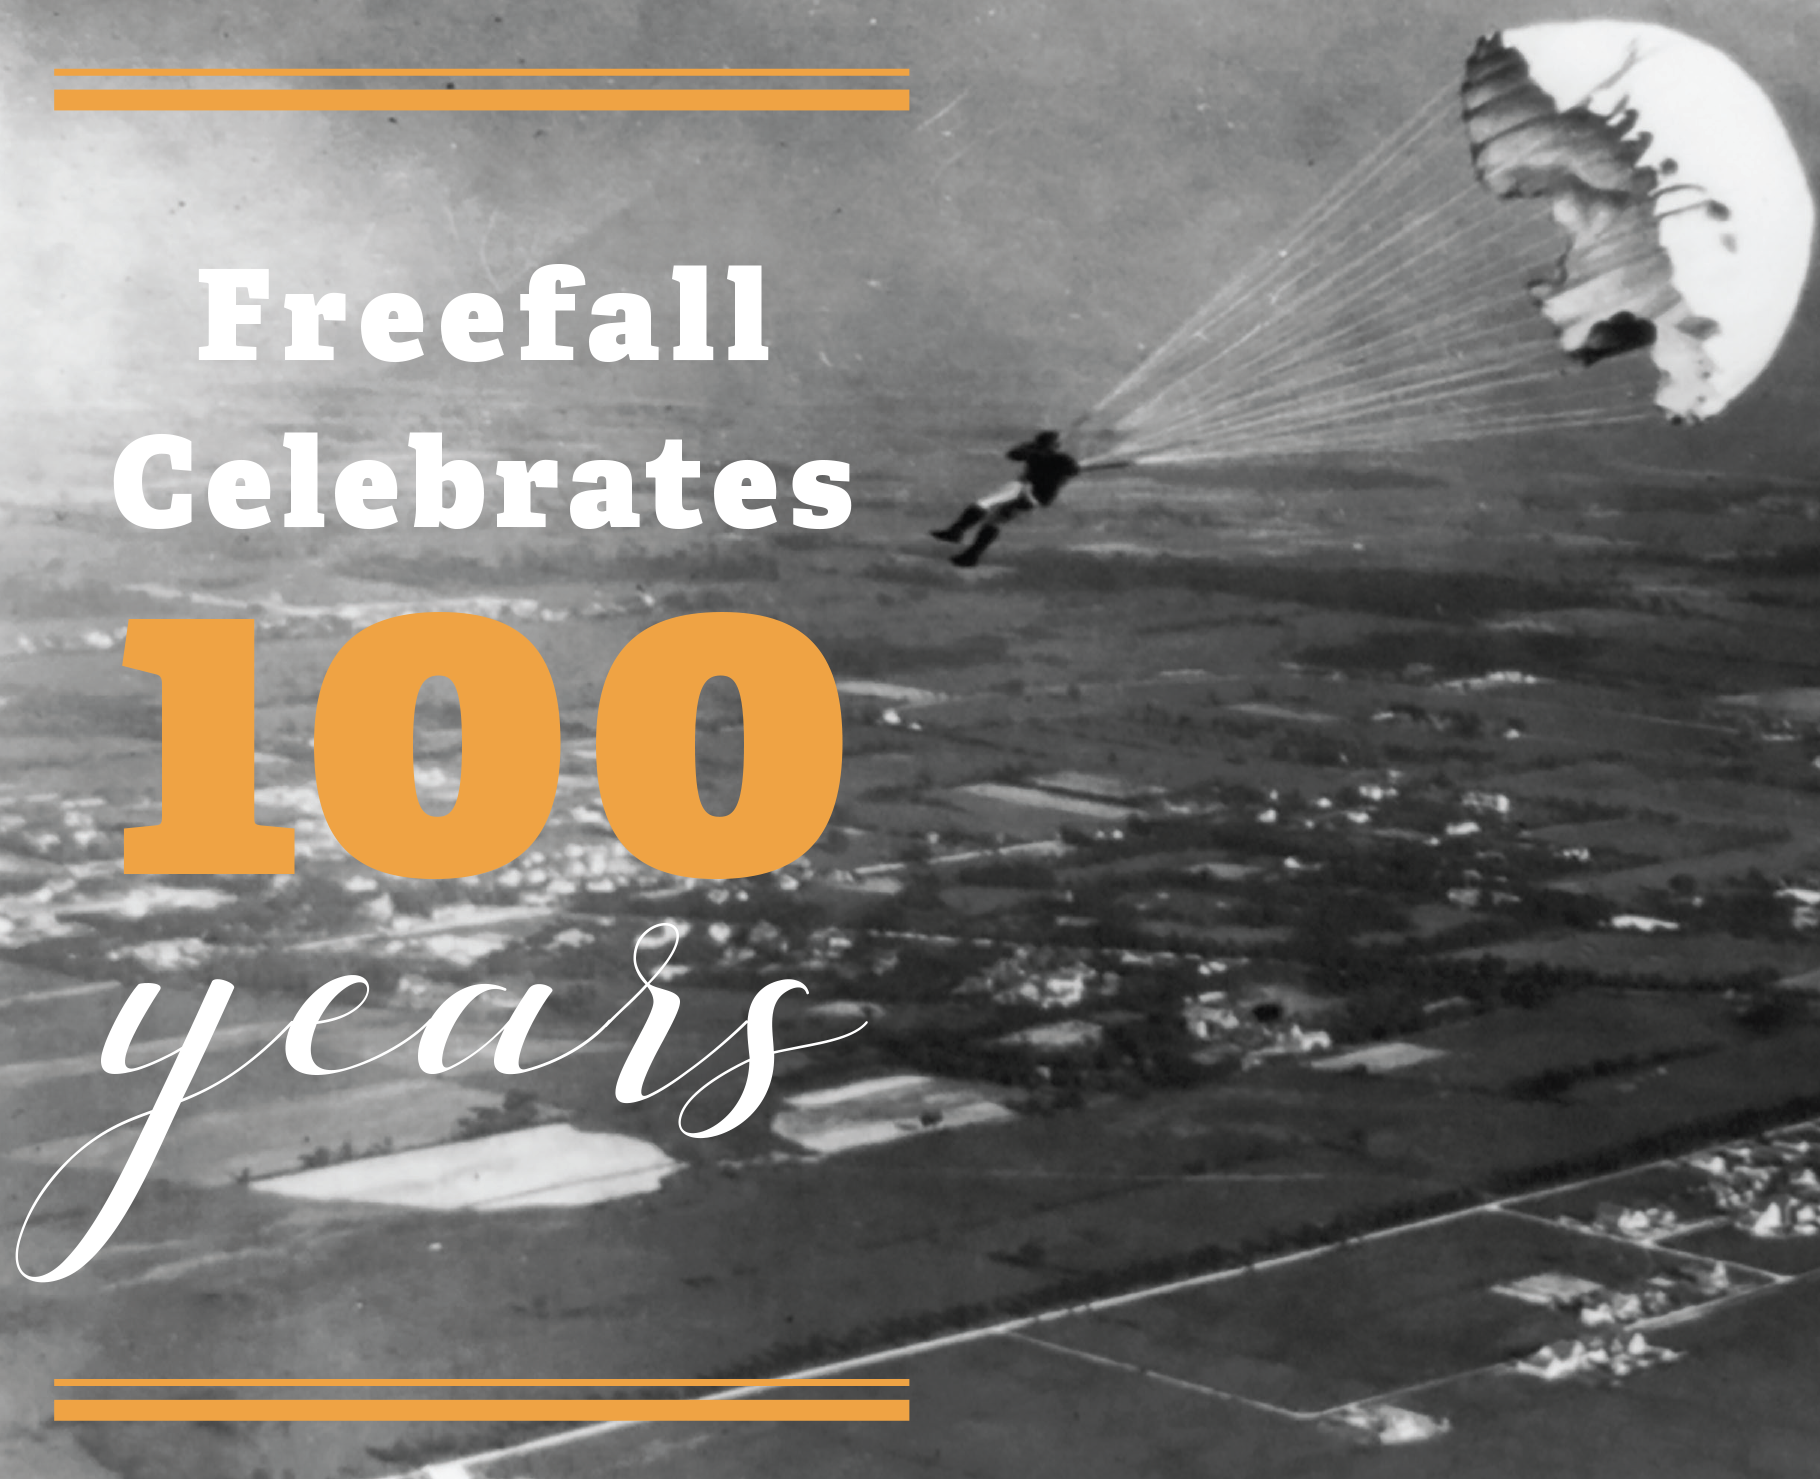 Freefall Celebrates 100 Years